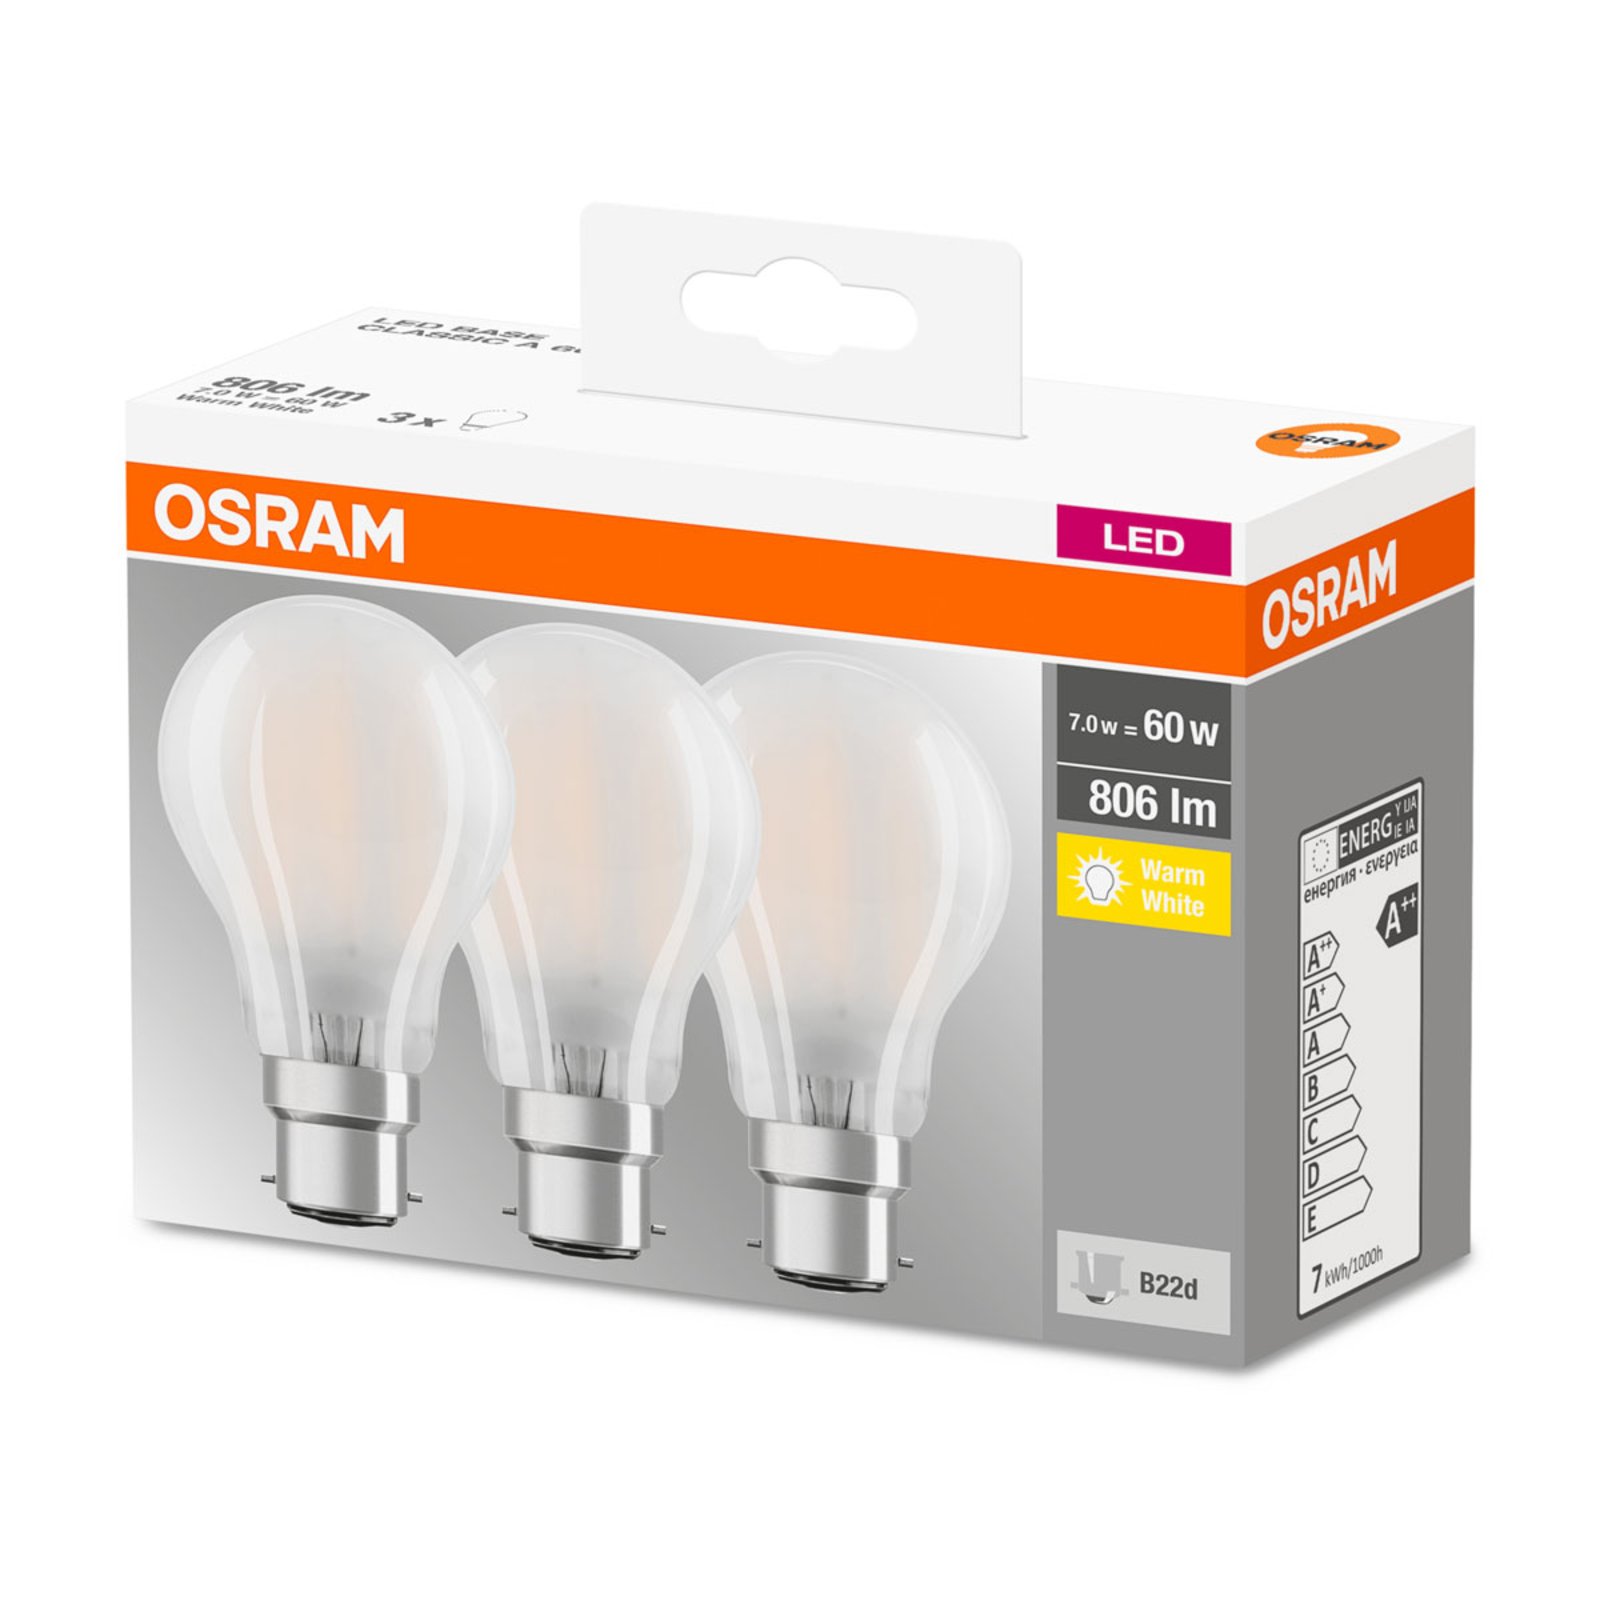 OSRAM LED lámpa B22d Classic 827 6,5W 3db-os matt